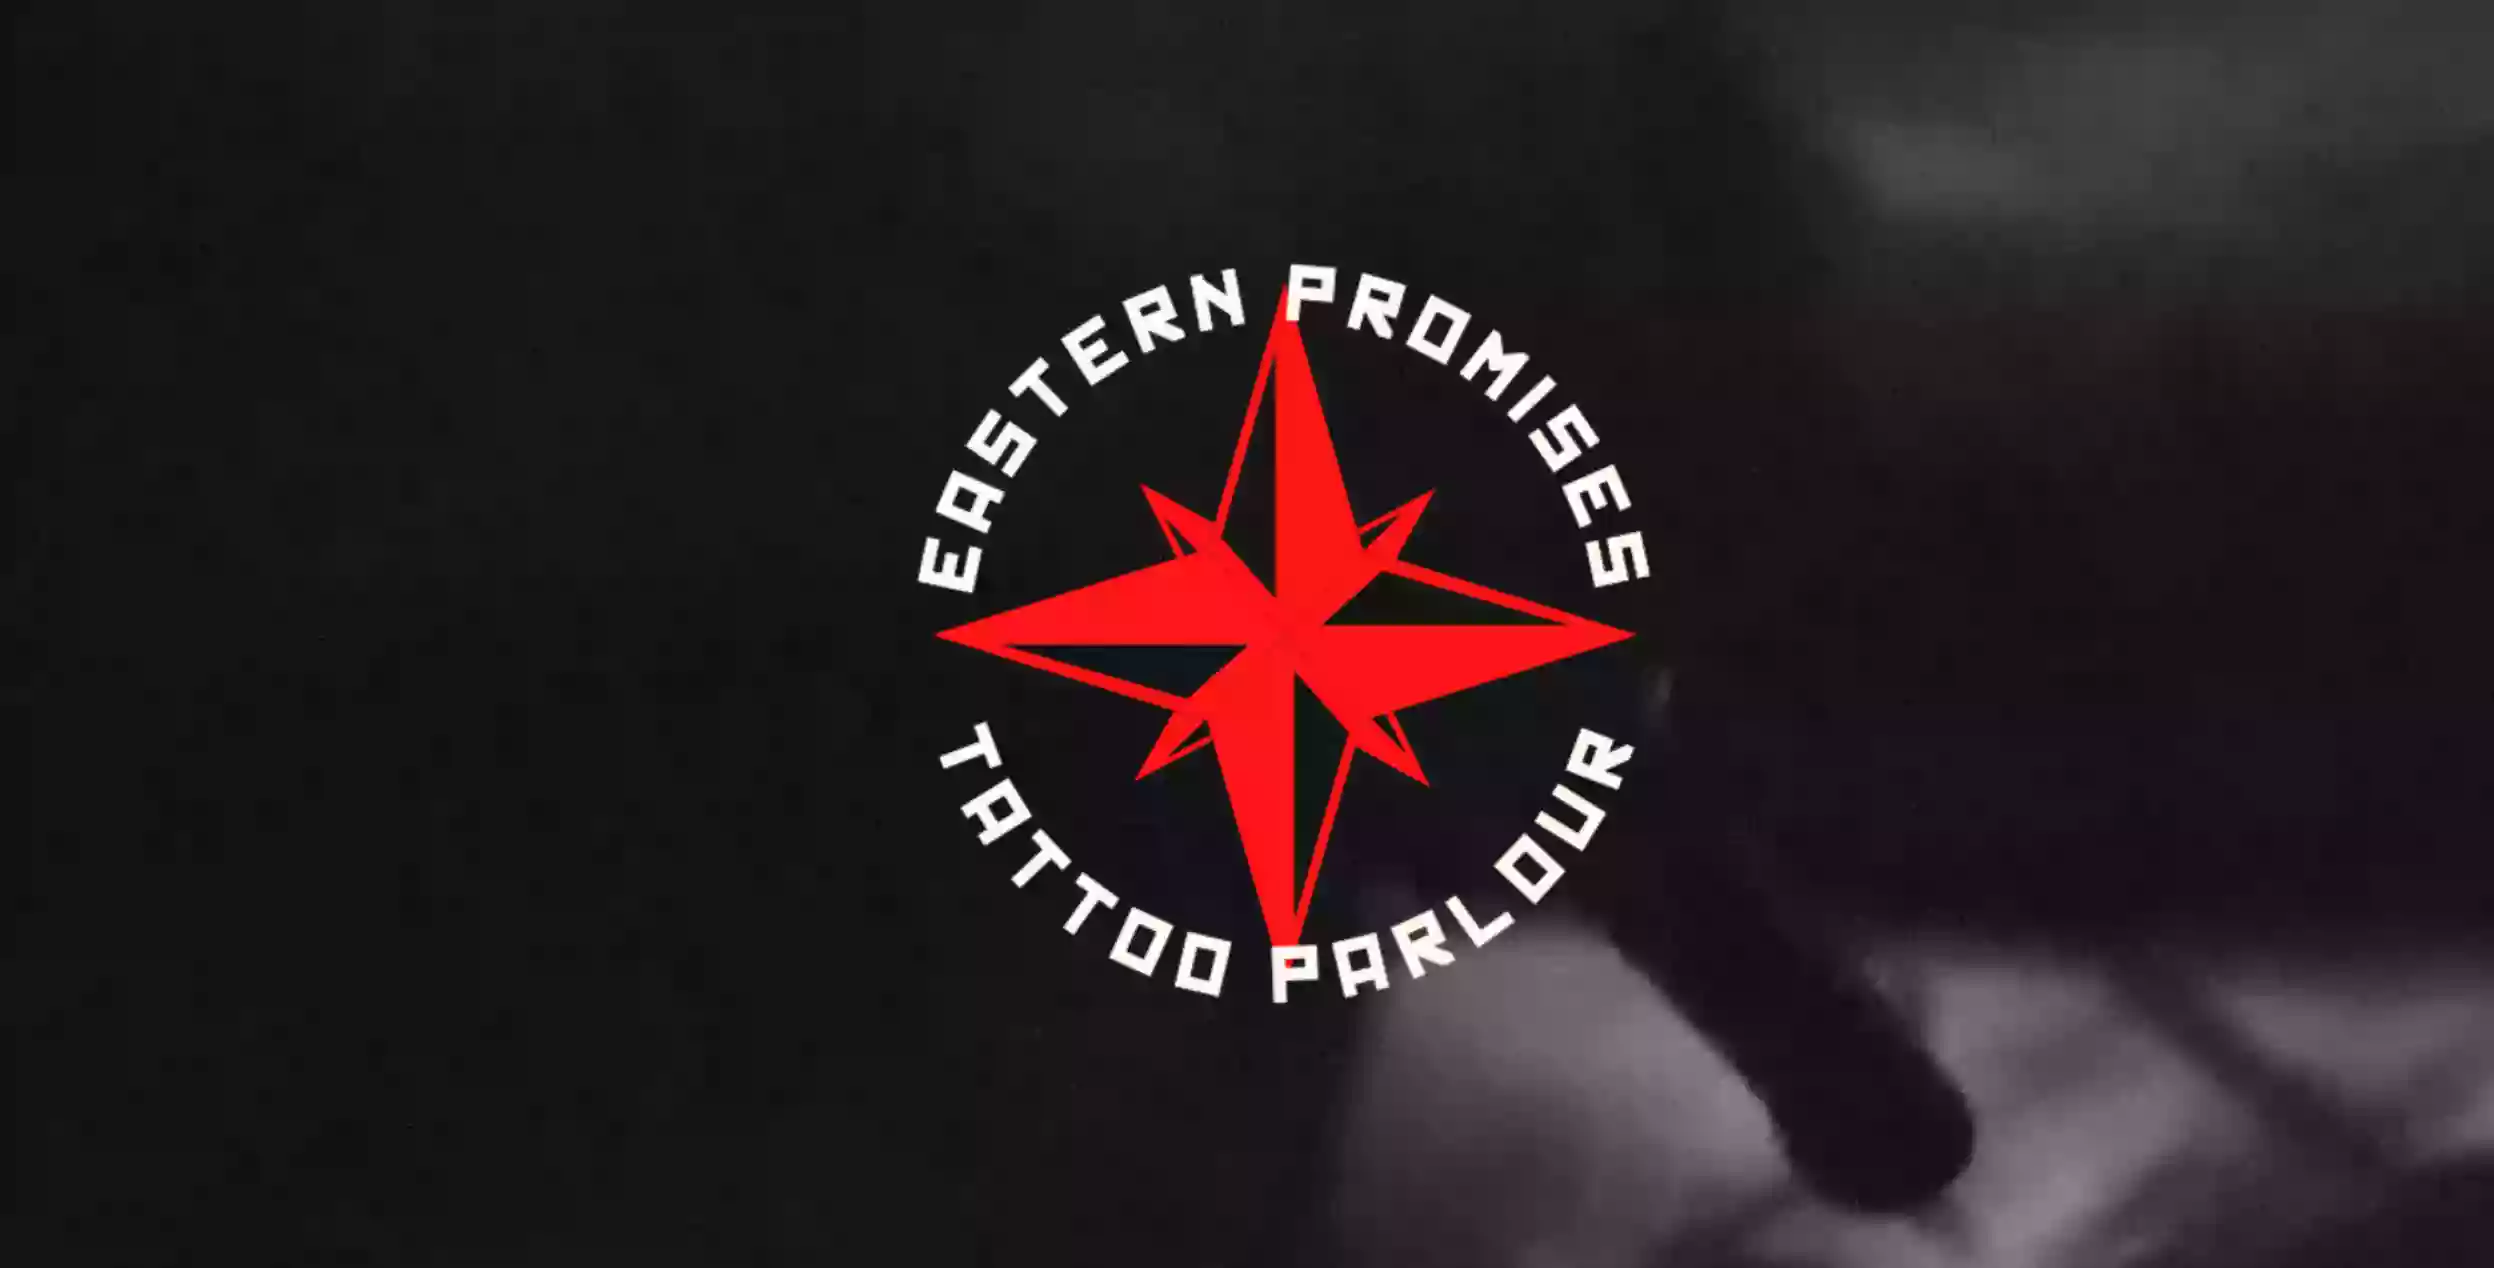 Eastern Promises Tattoo Parlour